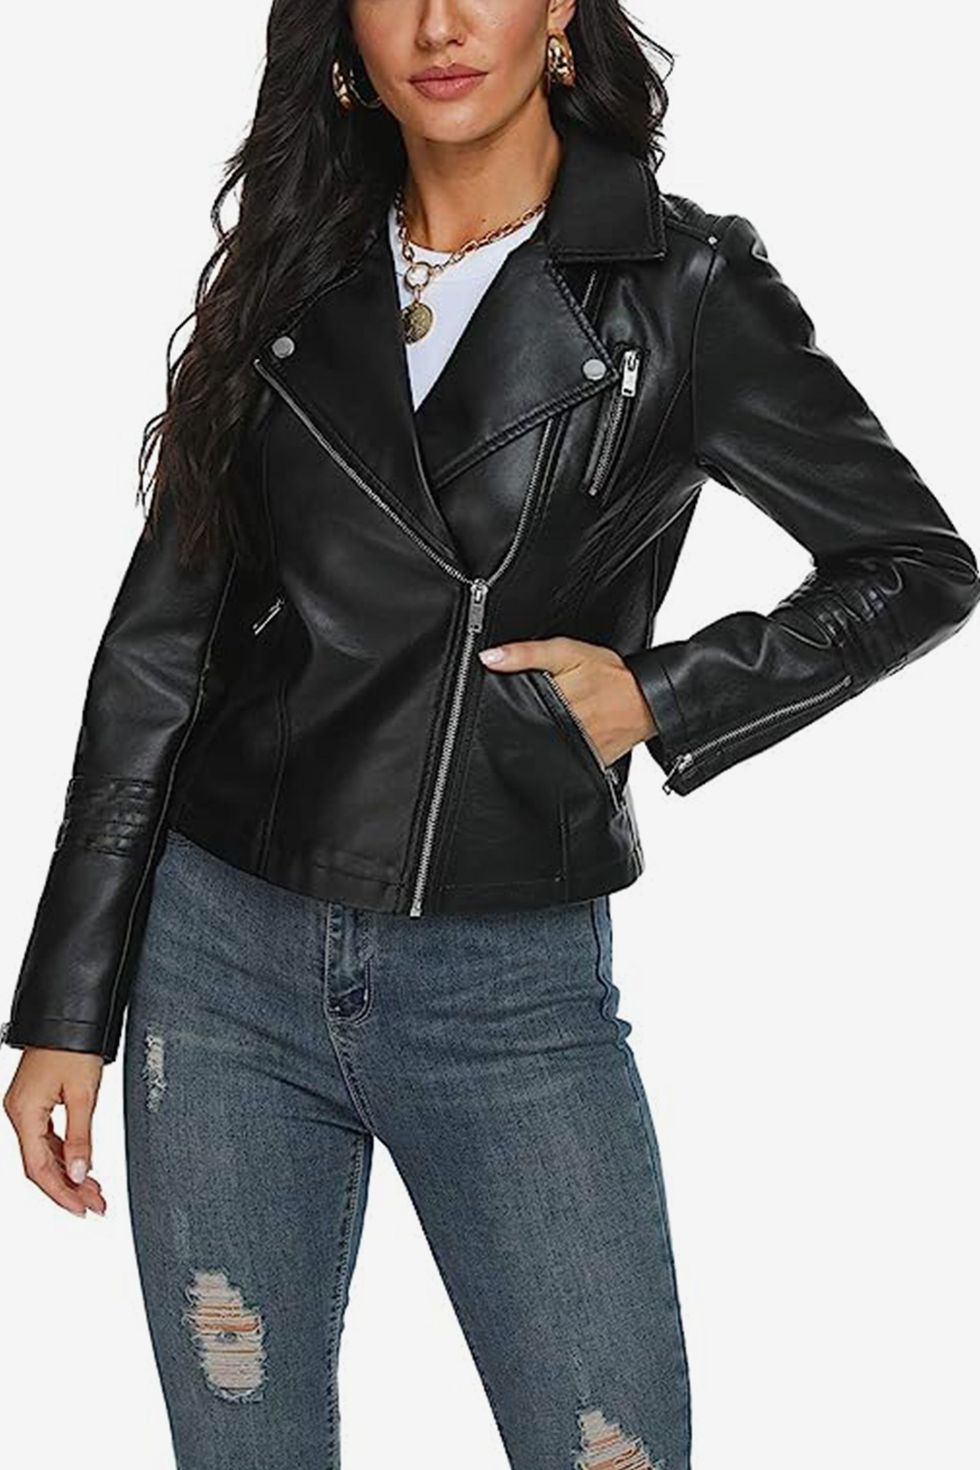 Fahsyee Women's Zip Up Faux Leather Jacket